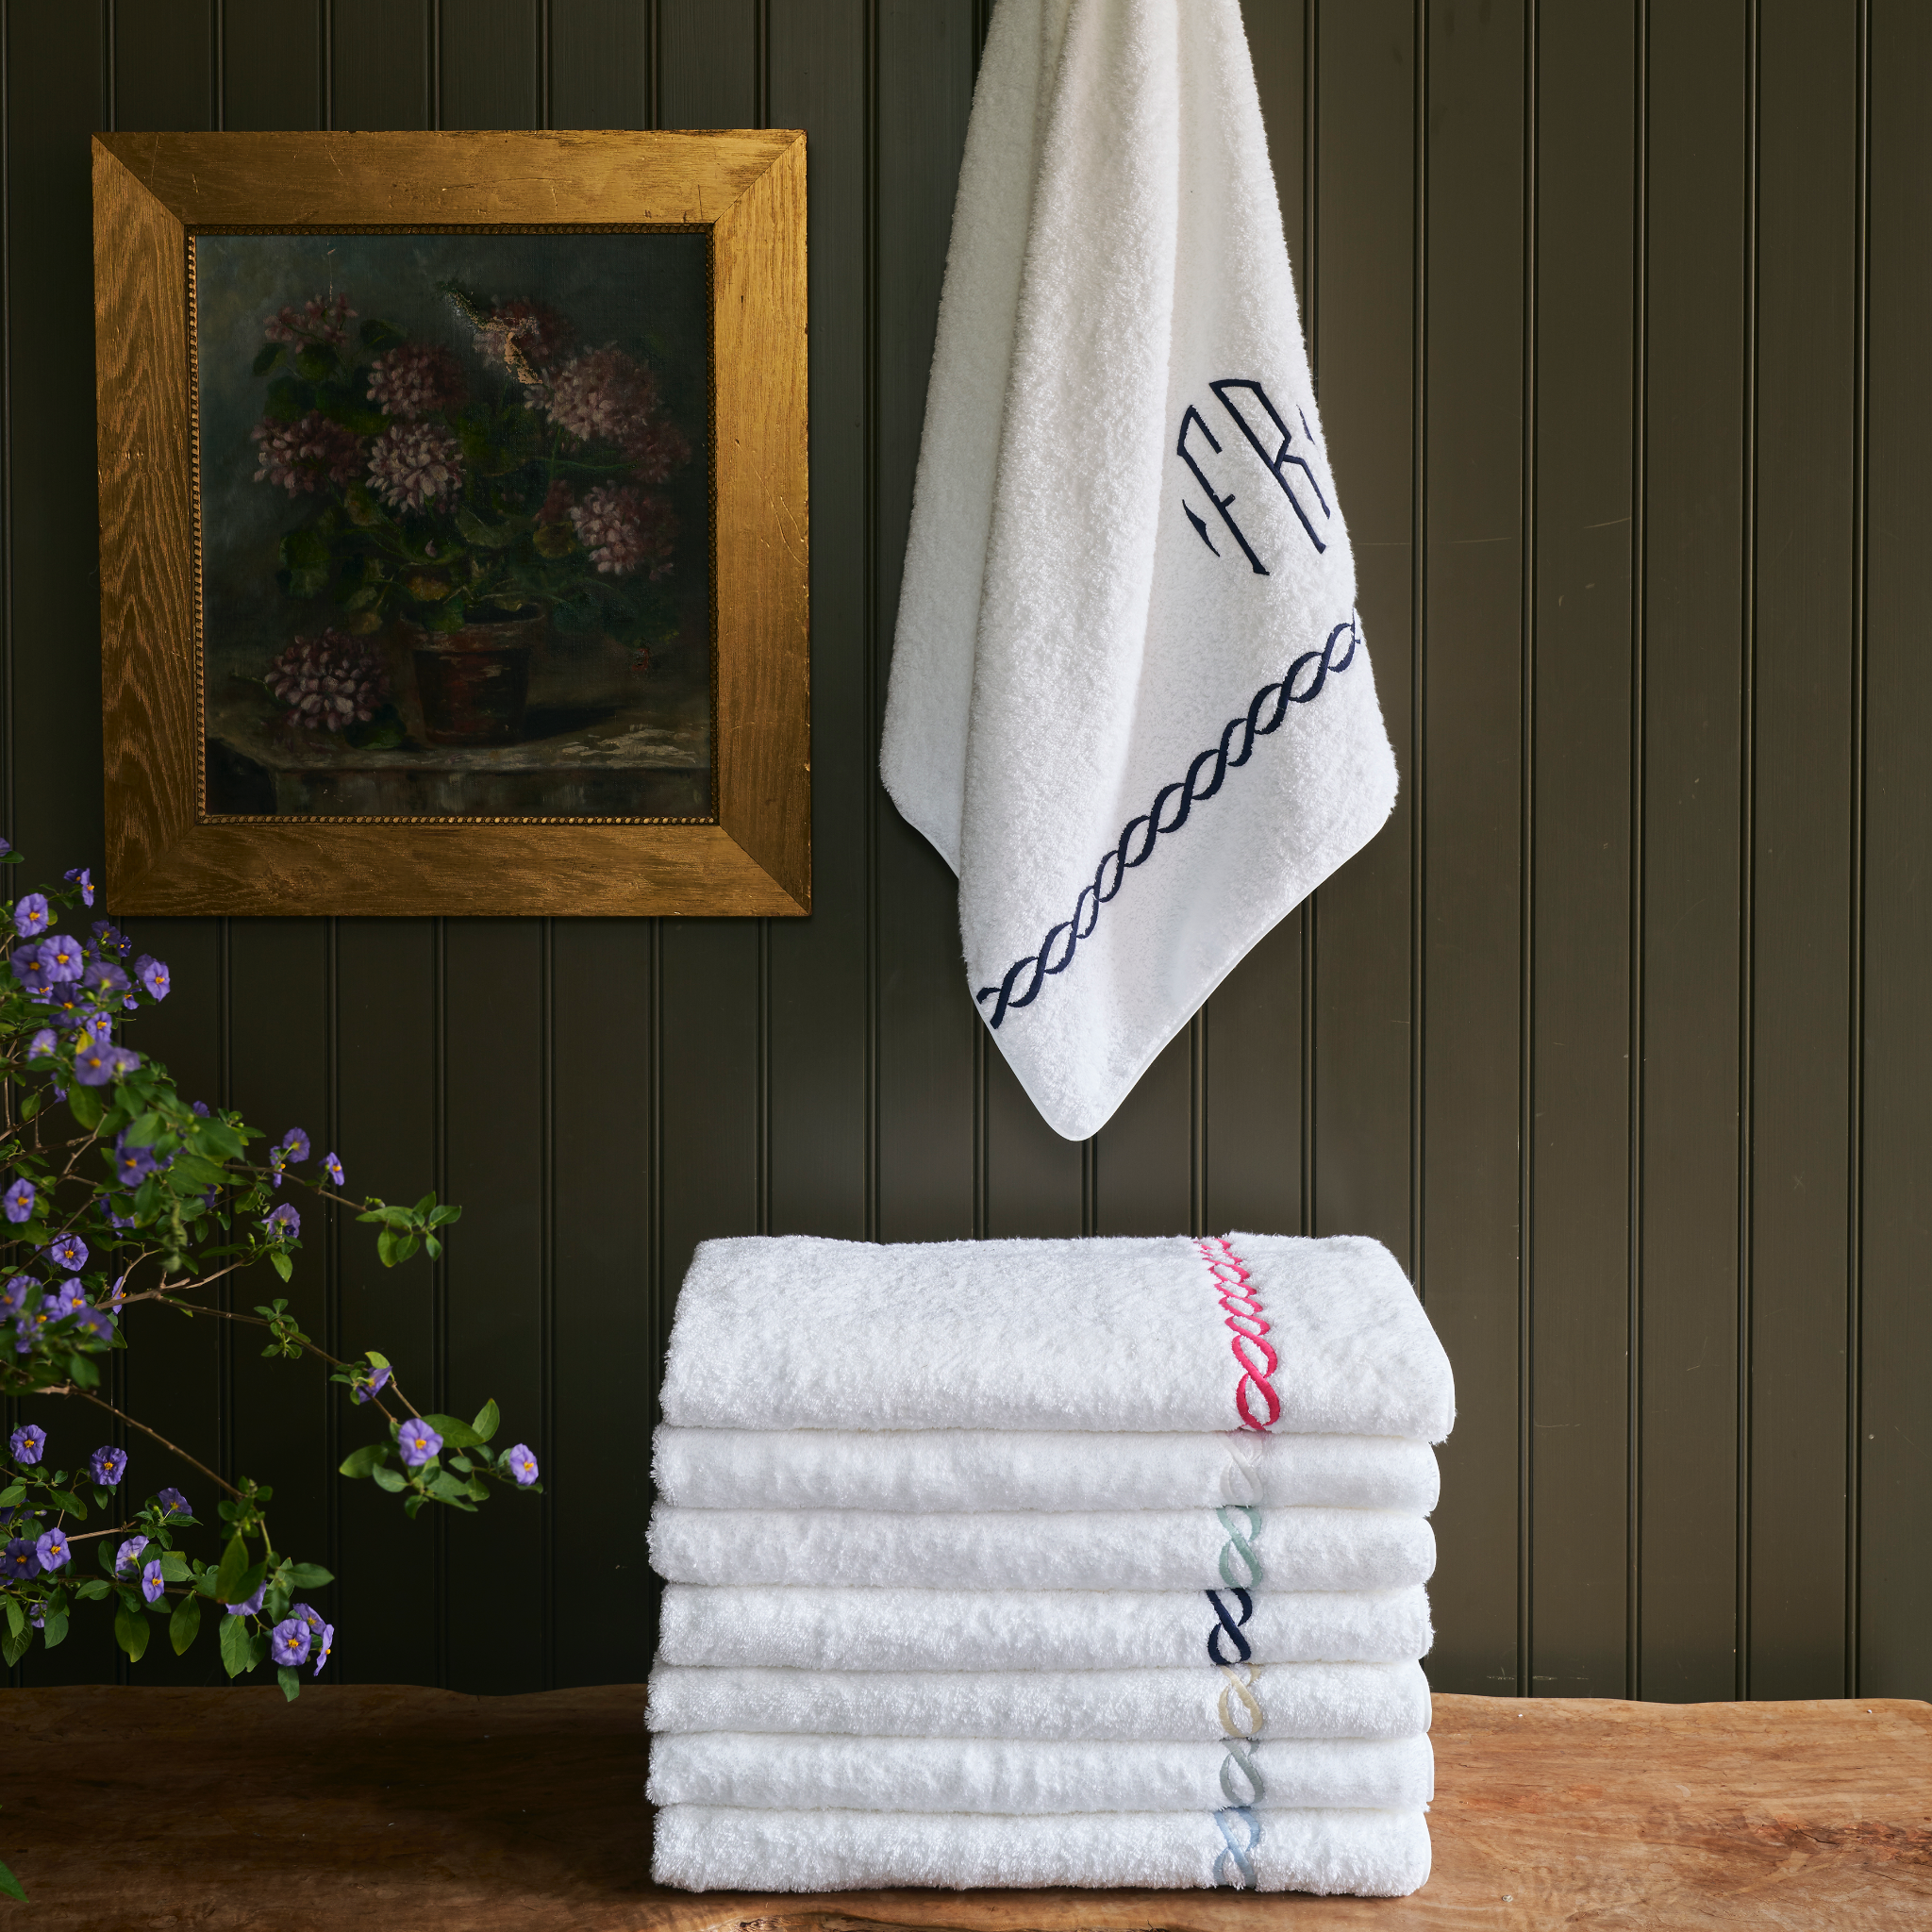 Classic Bath Towels